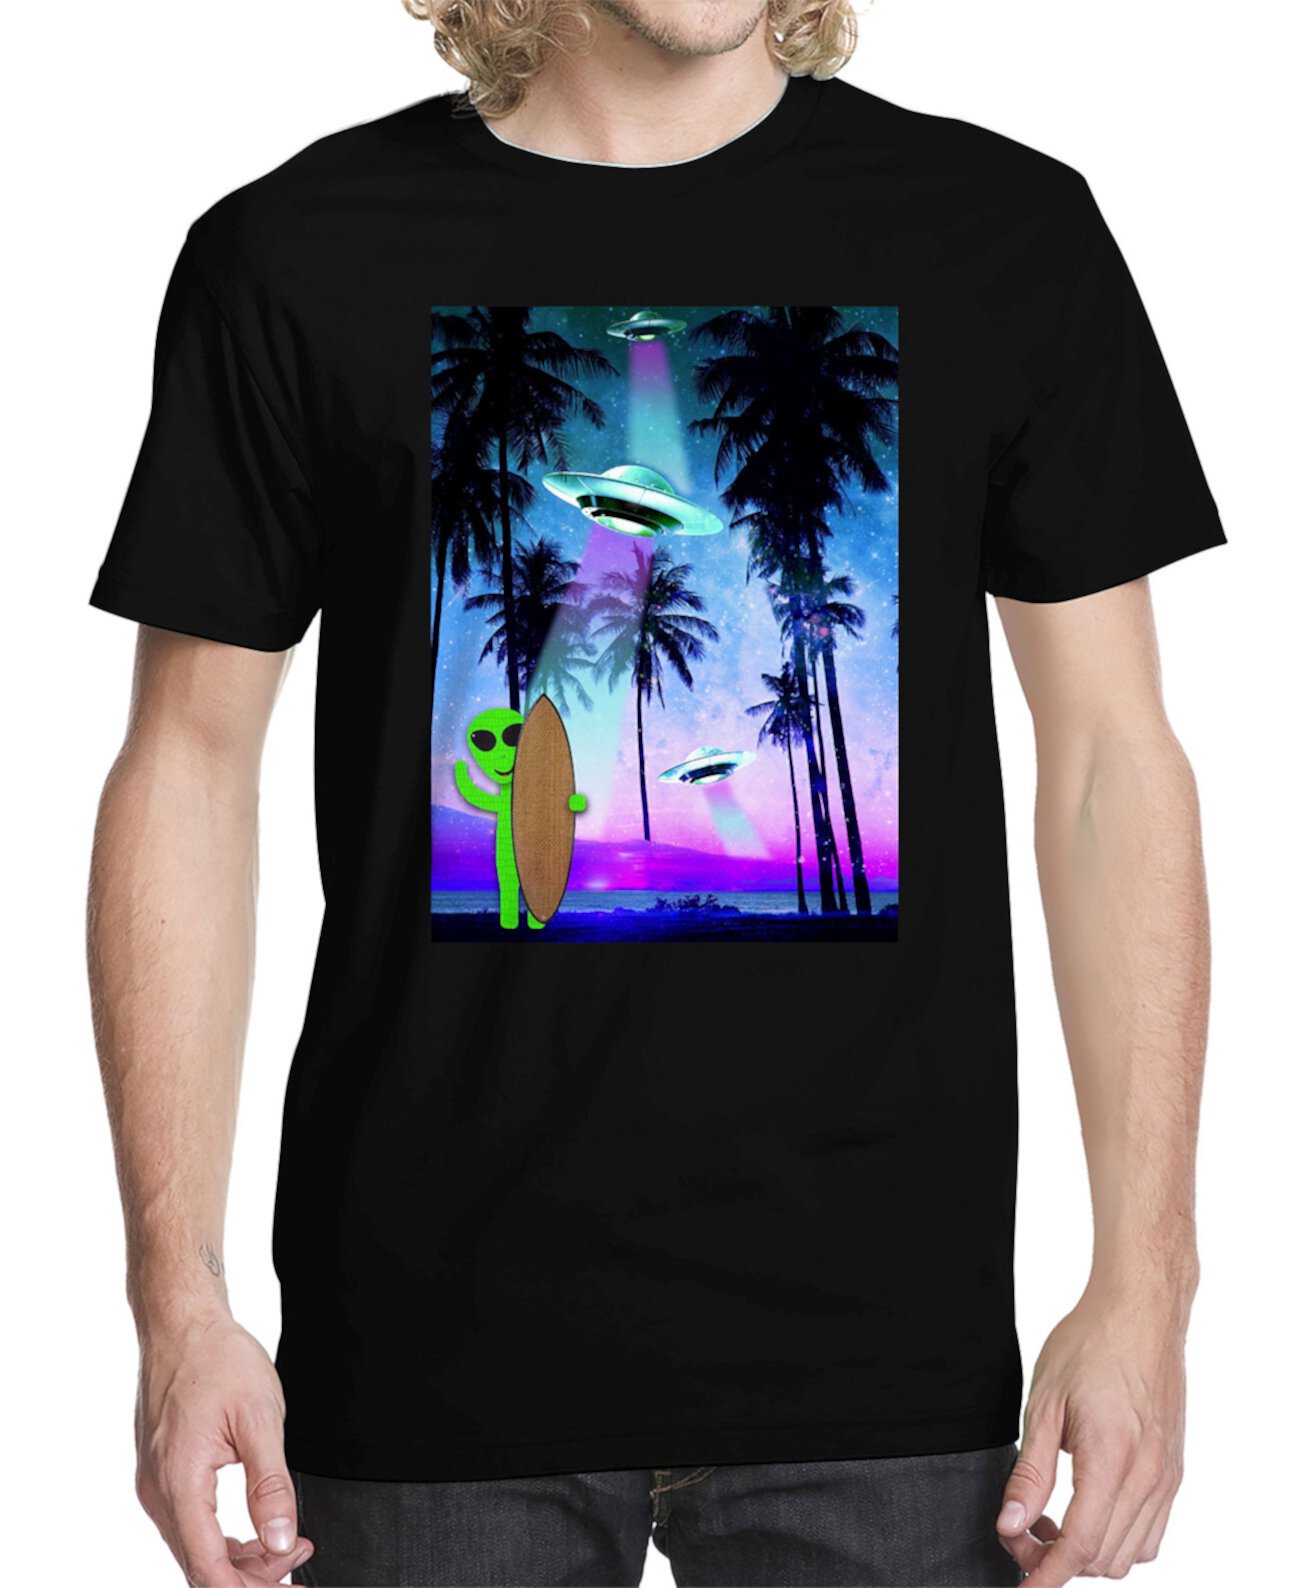 Мужская футболка с рисунком тропического космоса Buzz Shirts